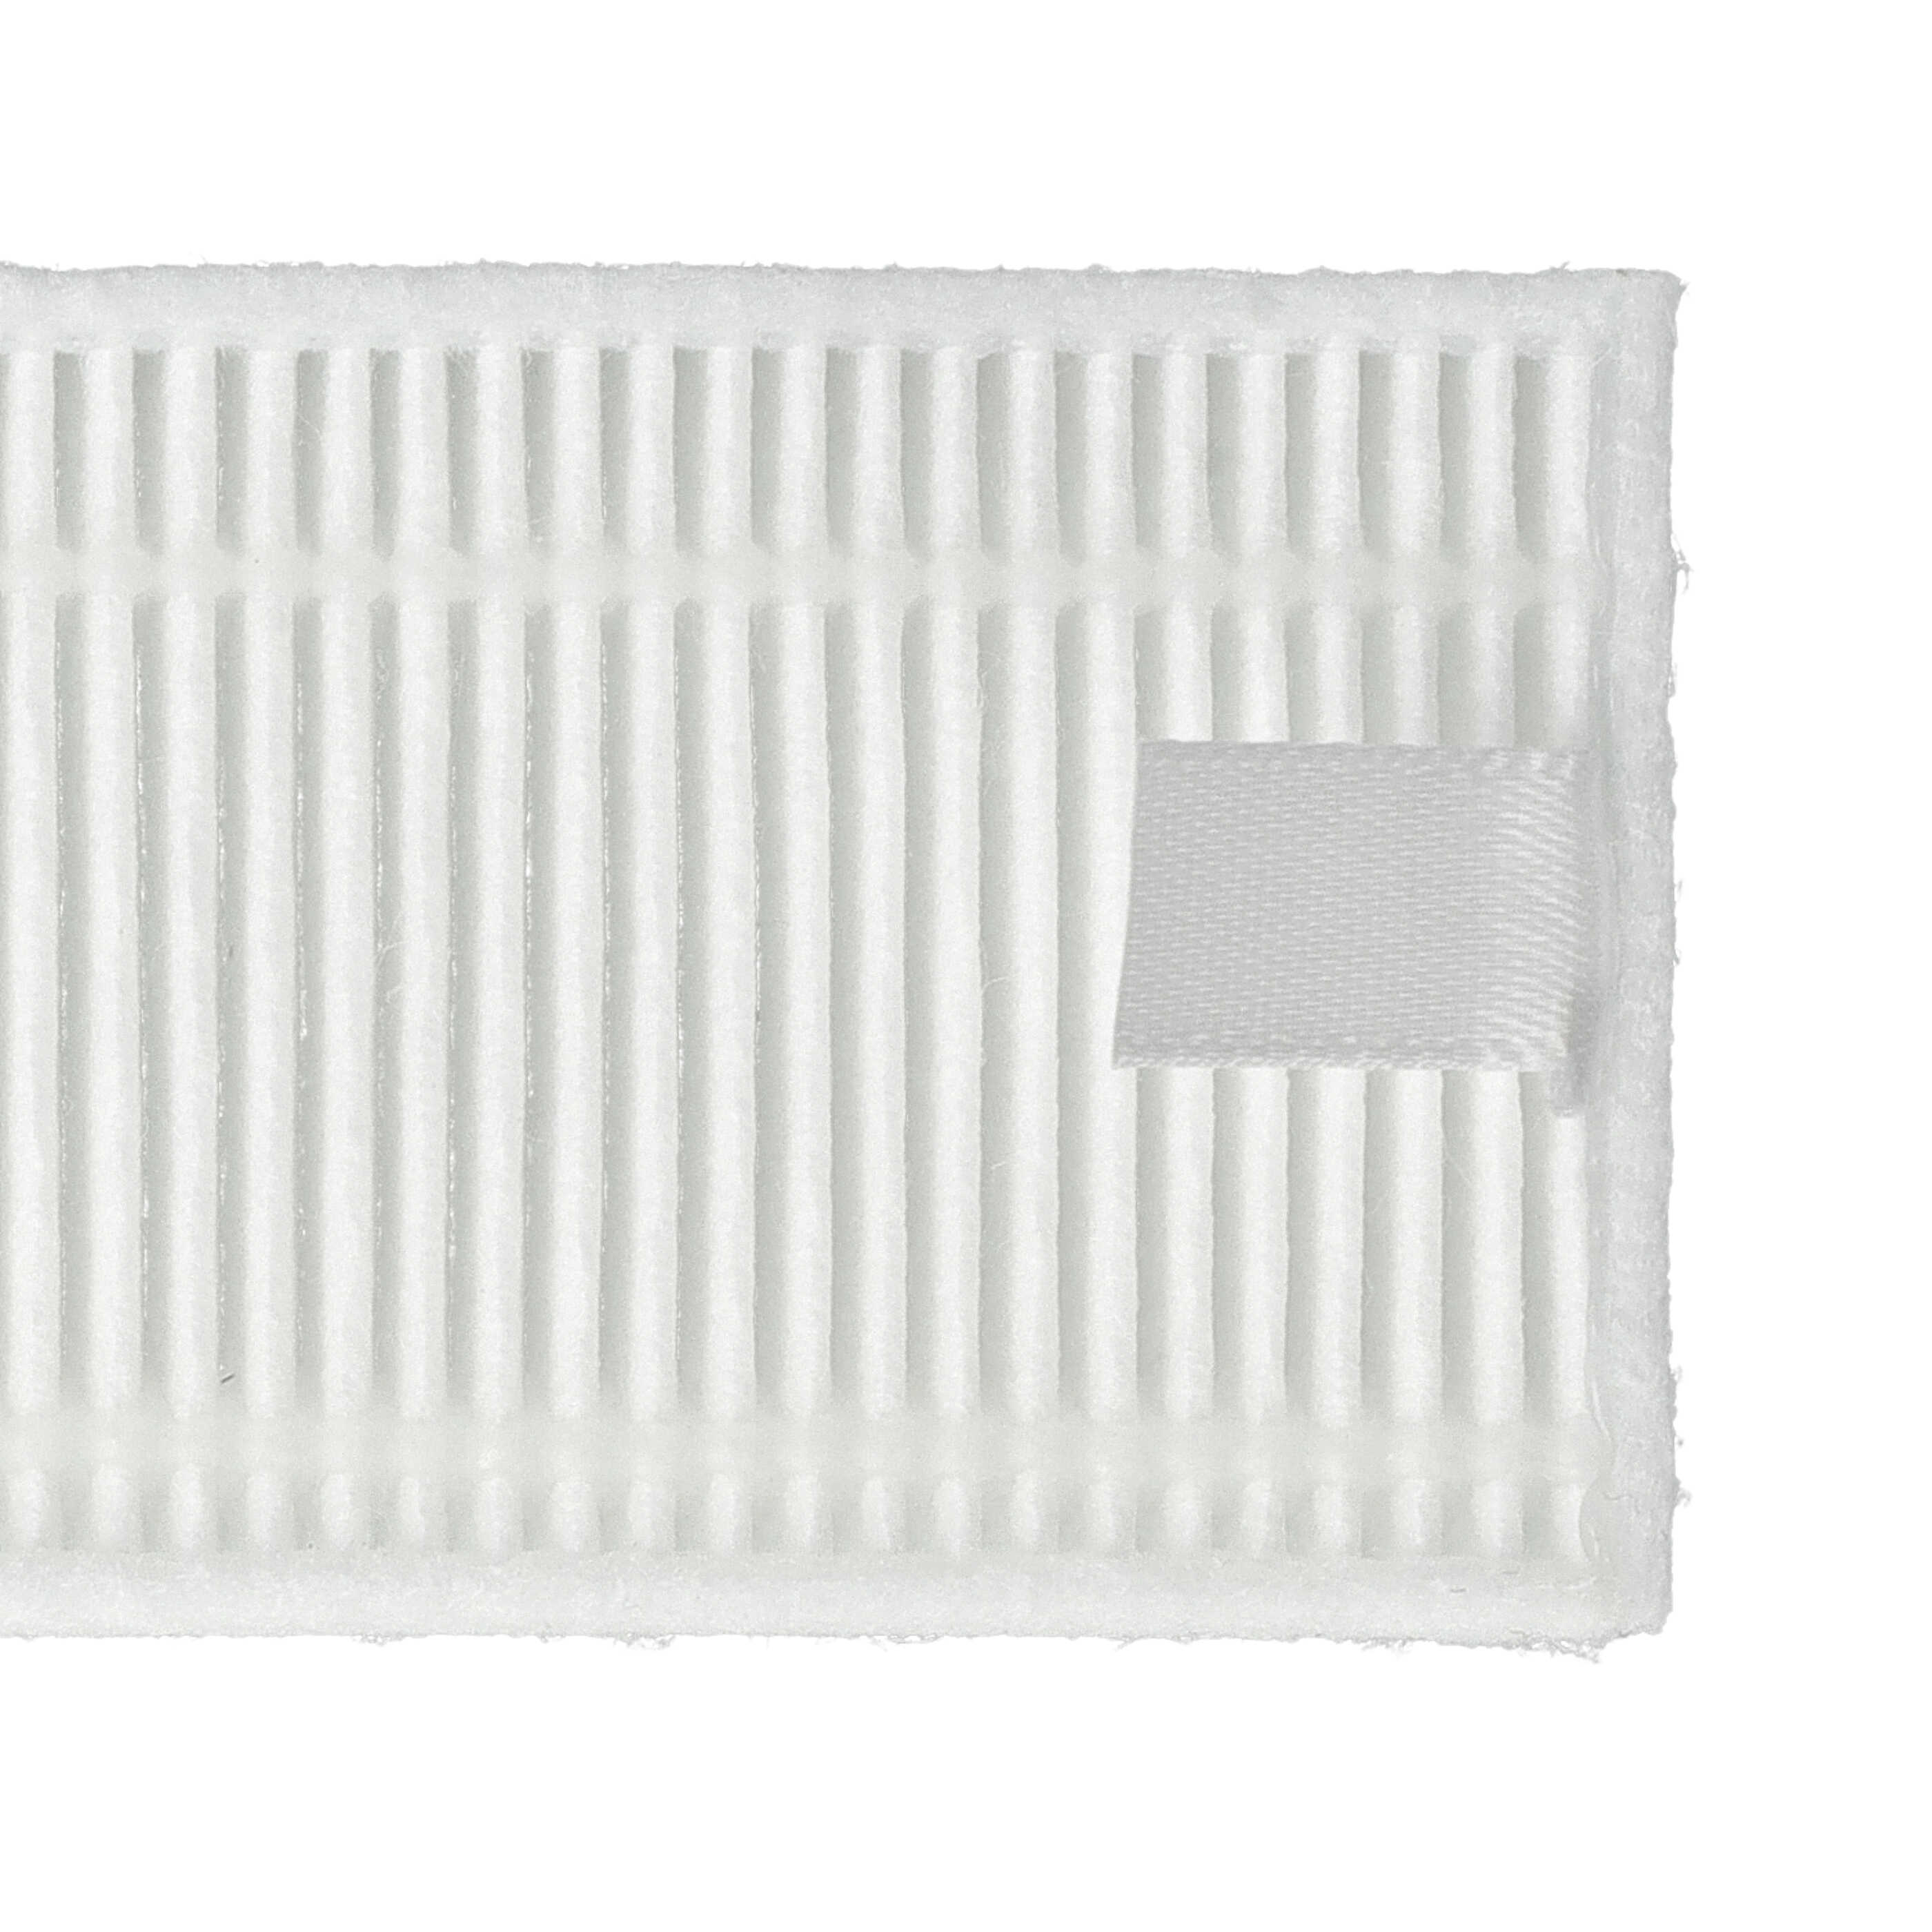 2x HEPA filter / sponge filter suitable for Xiaomi Mijia G1 Vacuum Cleaner